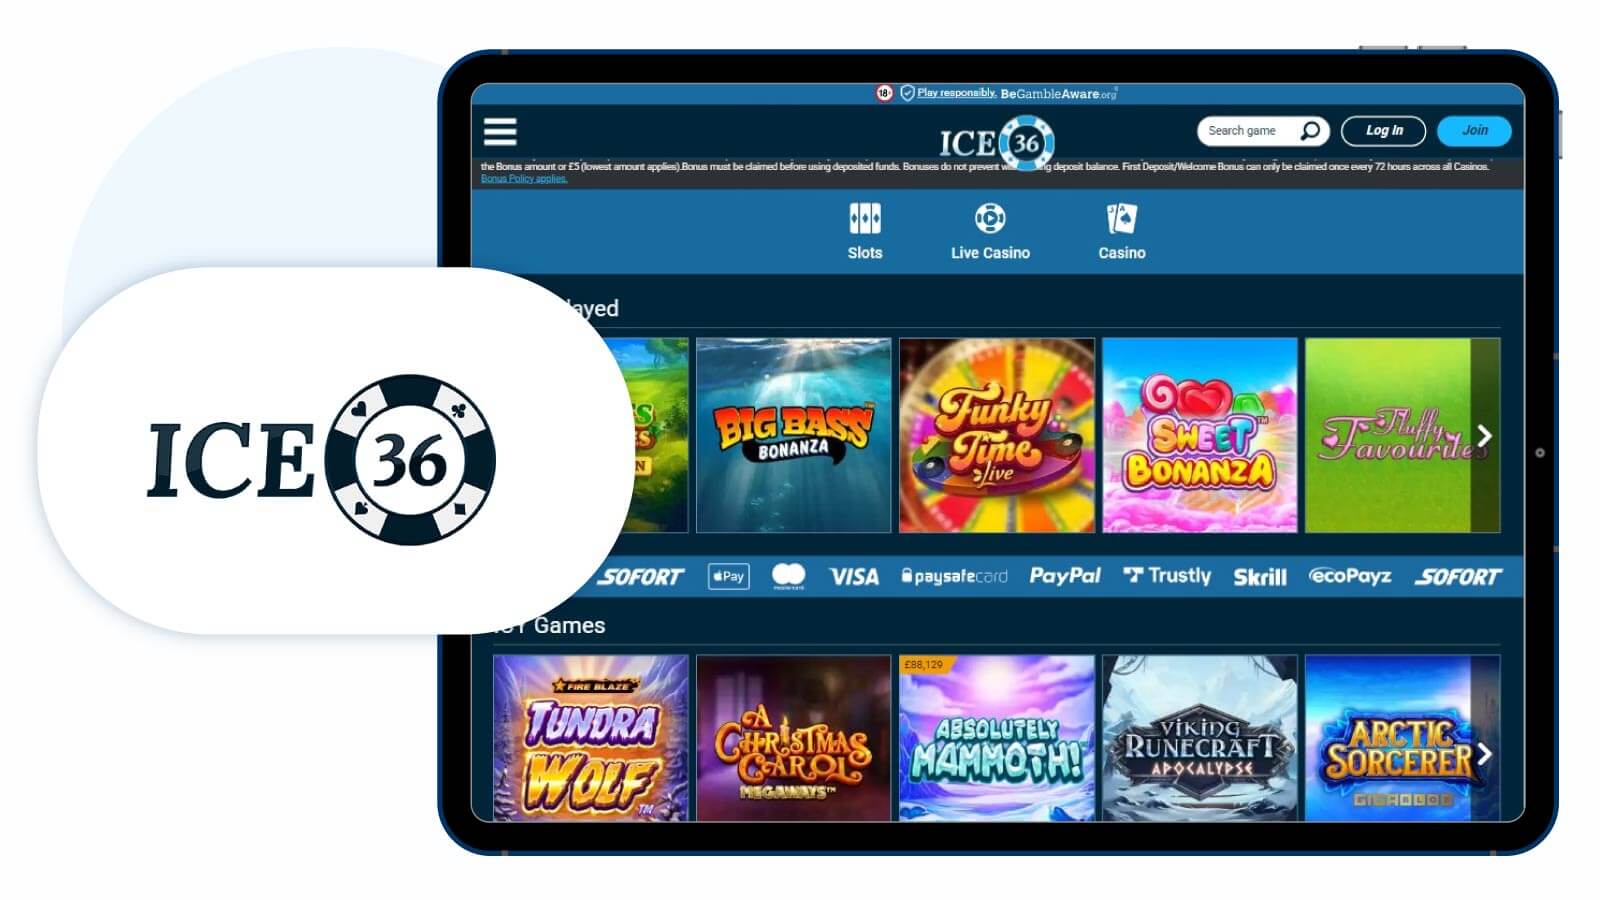 ice-36-casino-homepage